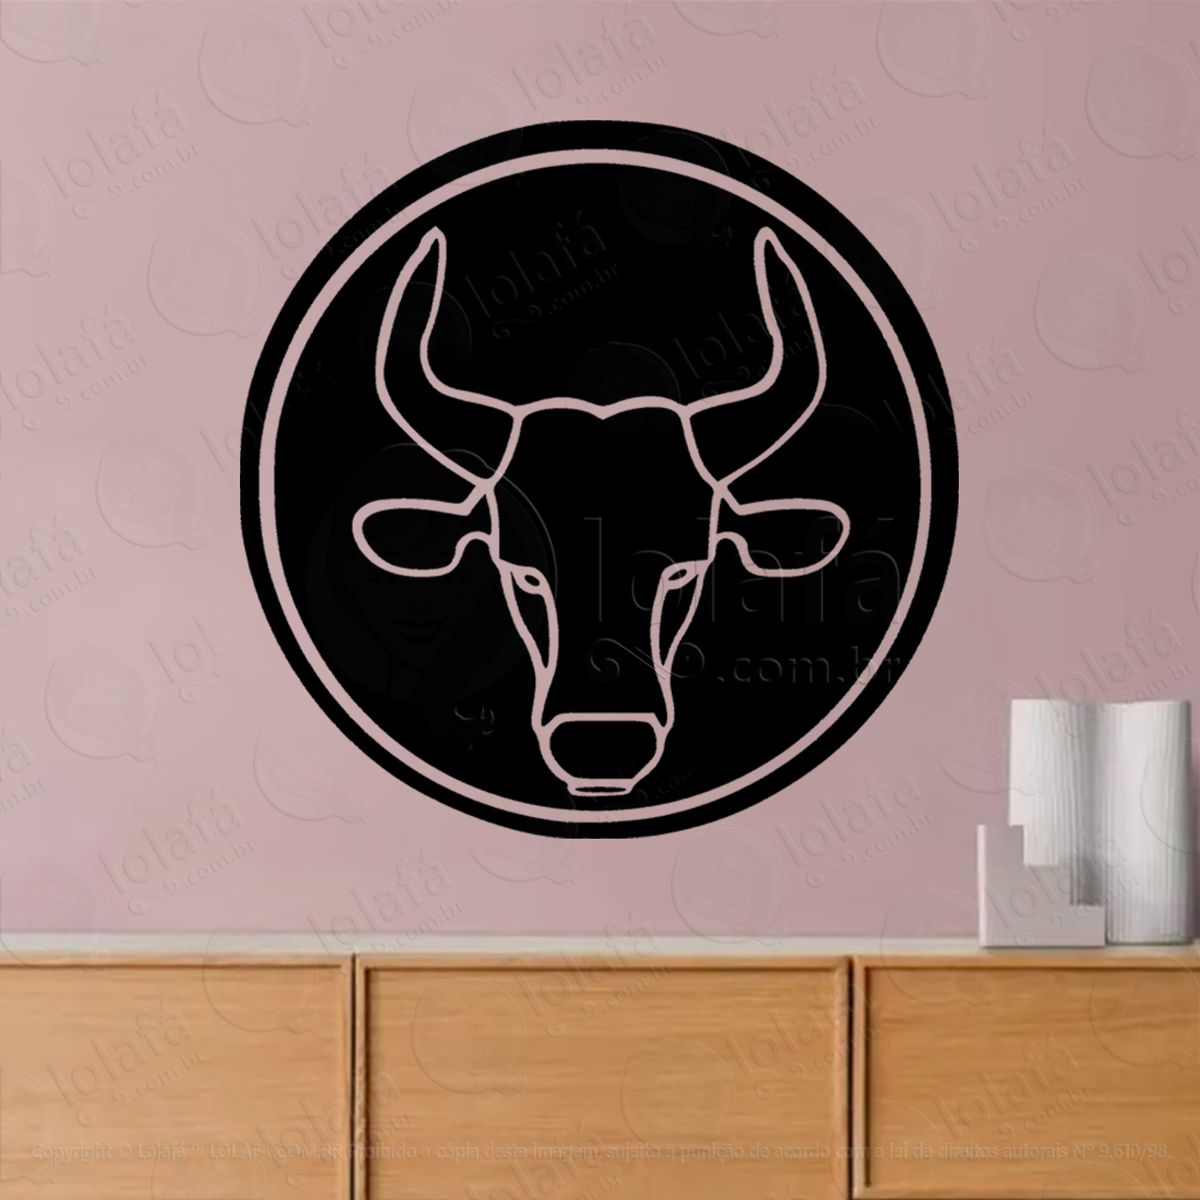 mandala signo de touro astrologia taurus adesivo de parede decorativo para casa, sala, quarto, vidro e altar ocultista - mod:41